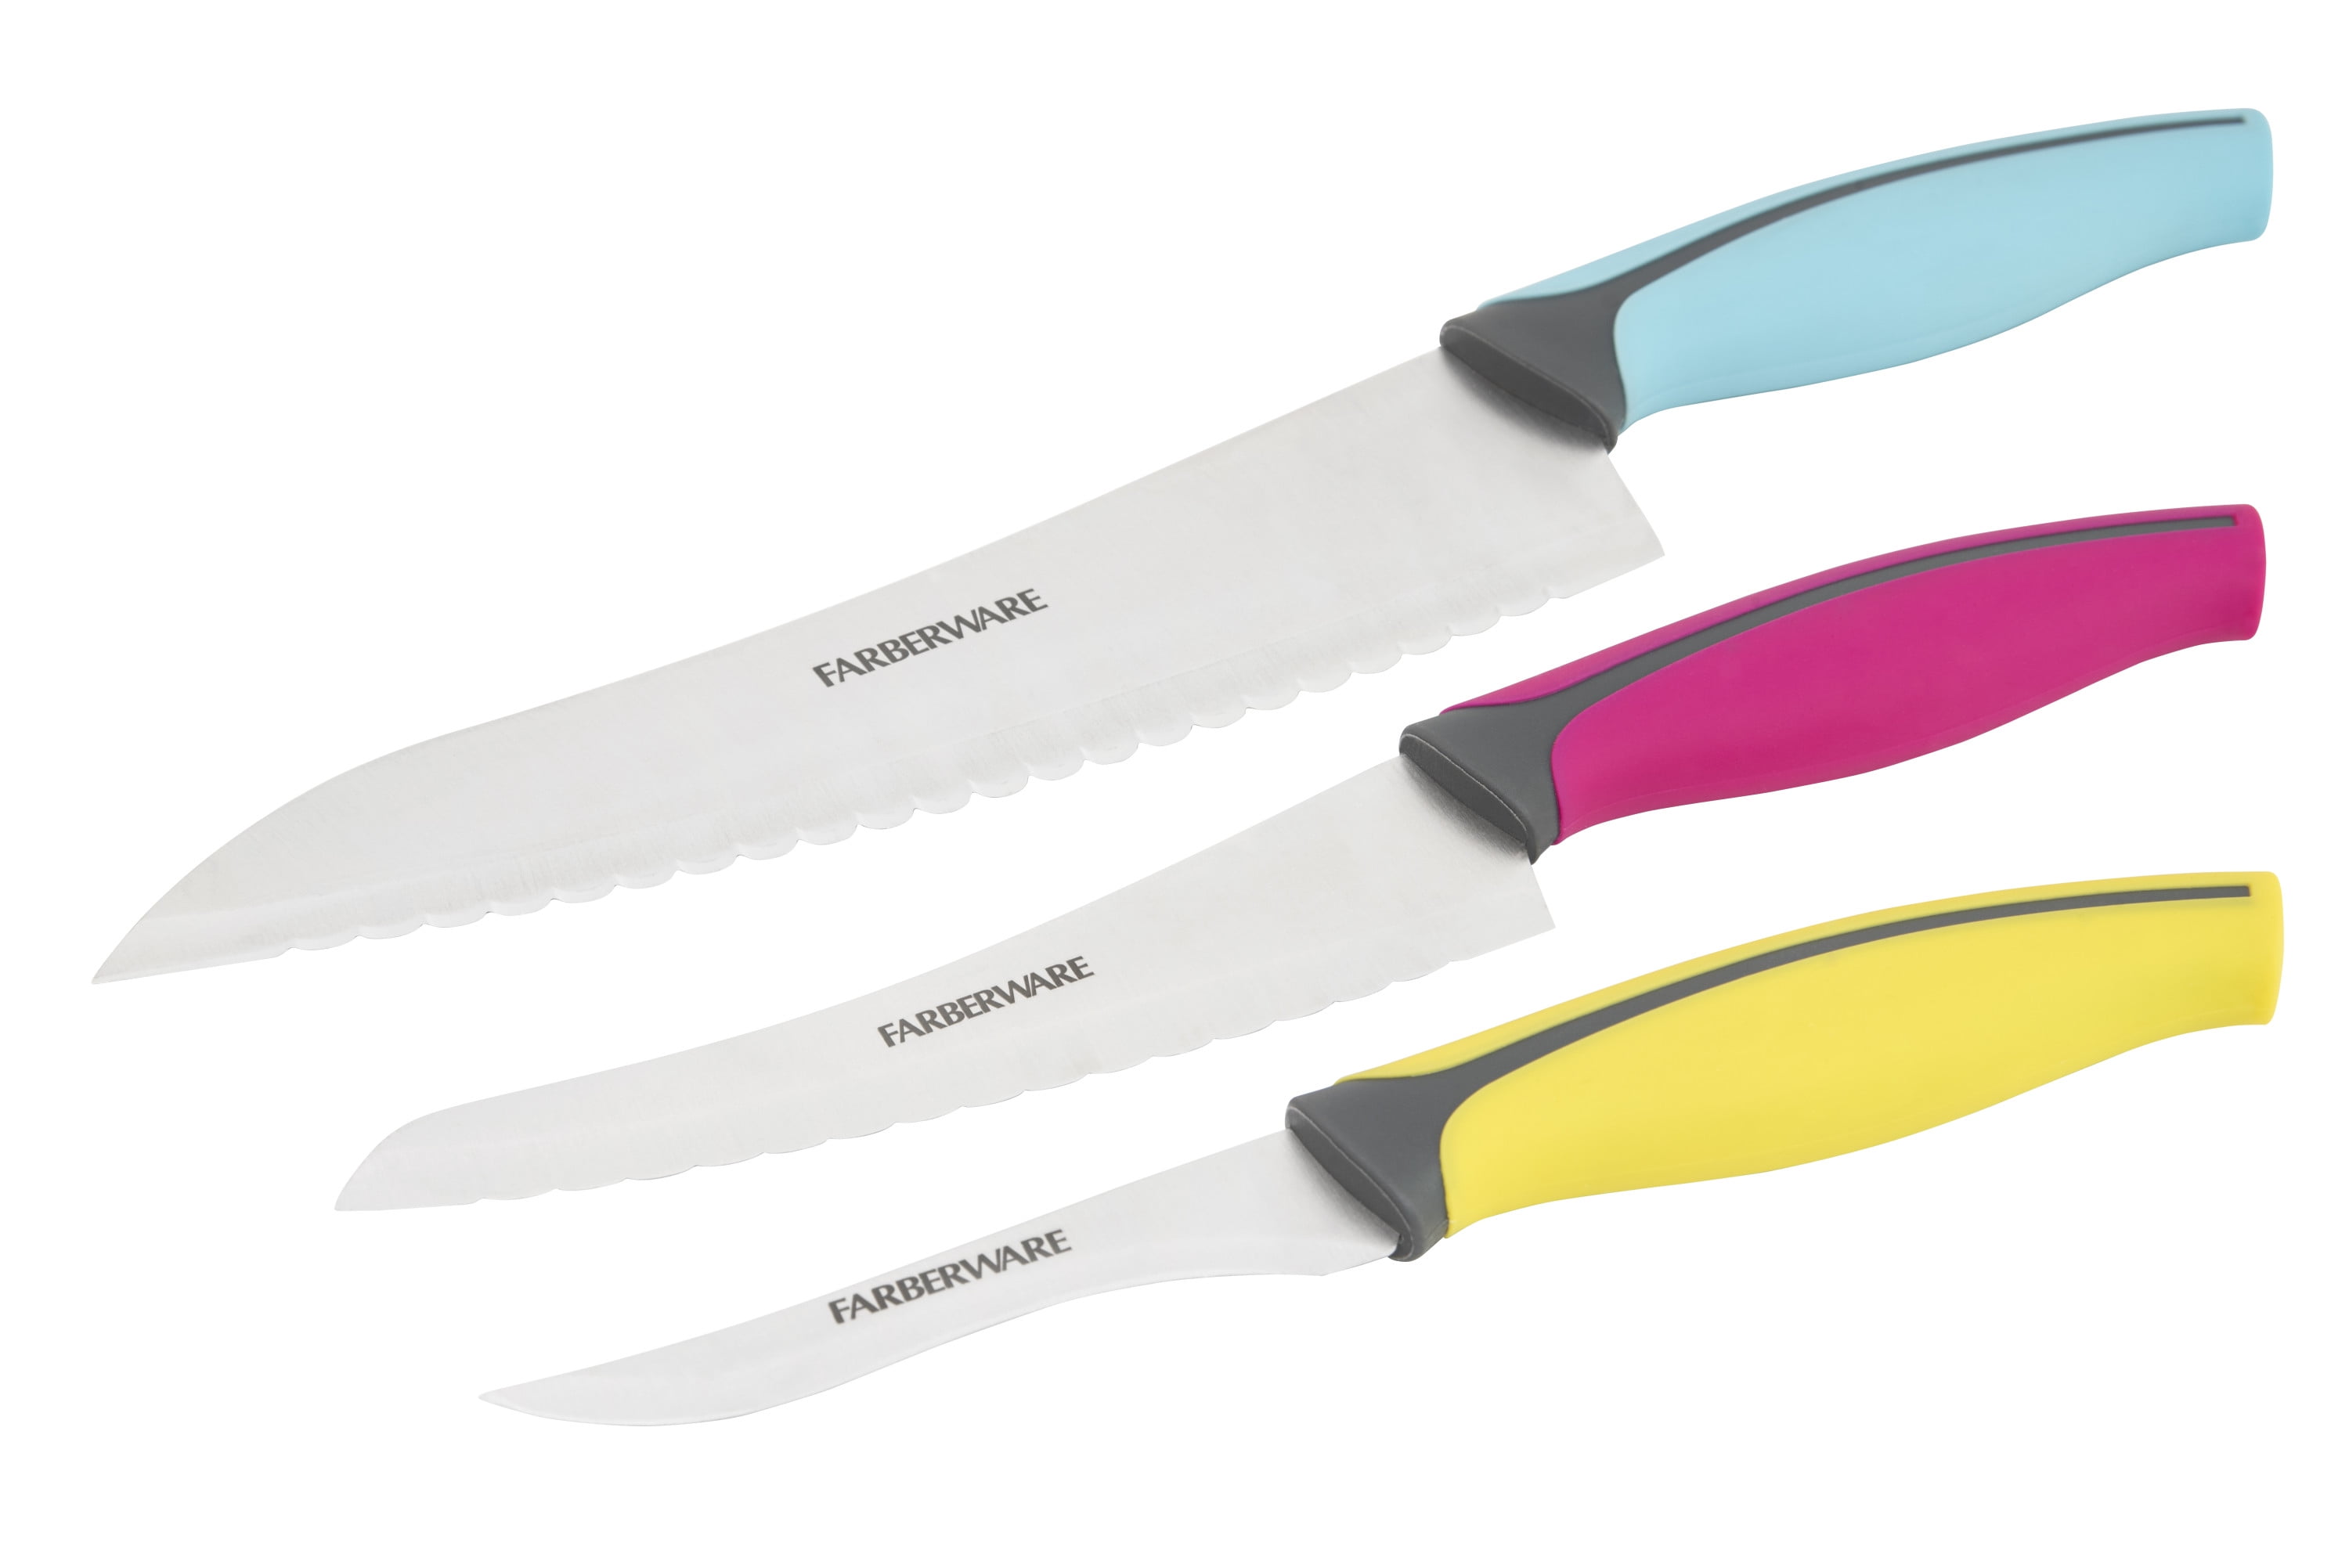 FARBERWARE Serrated Bread Knife & Chef Knife 2 pcs Kitchen Knife